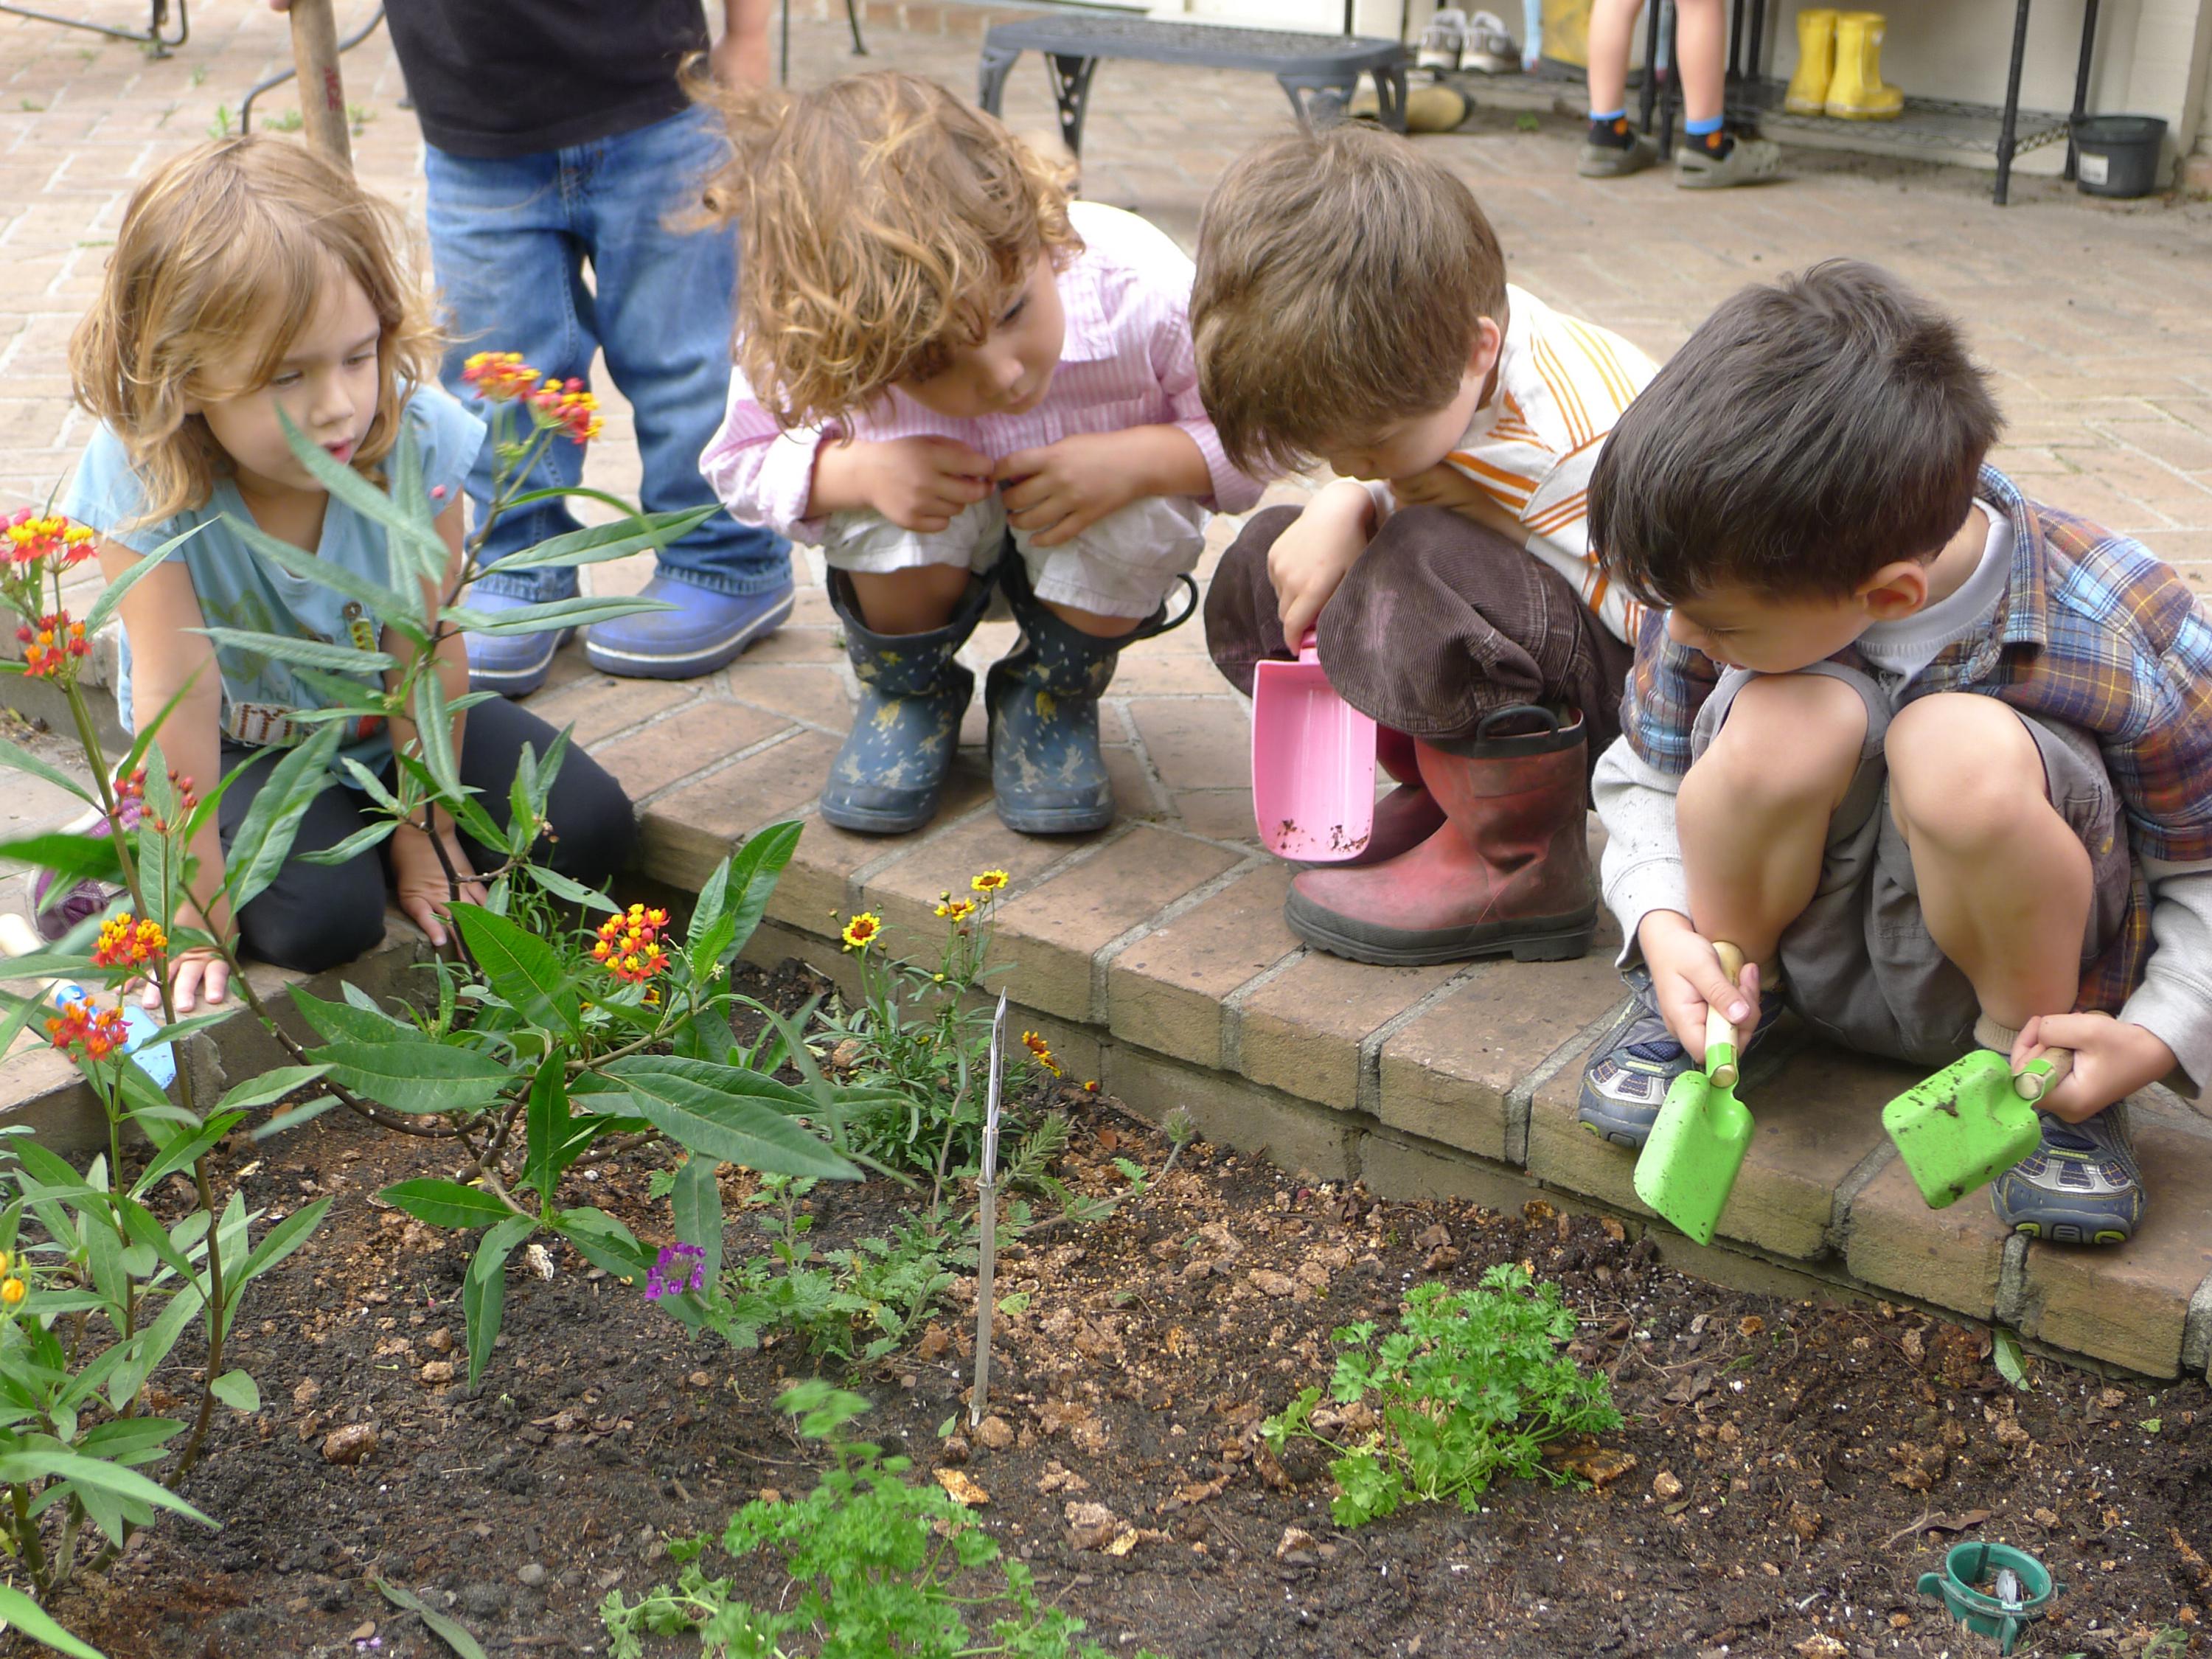 gallery of garden ideas for kids or children interior design